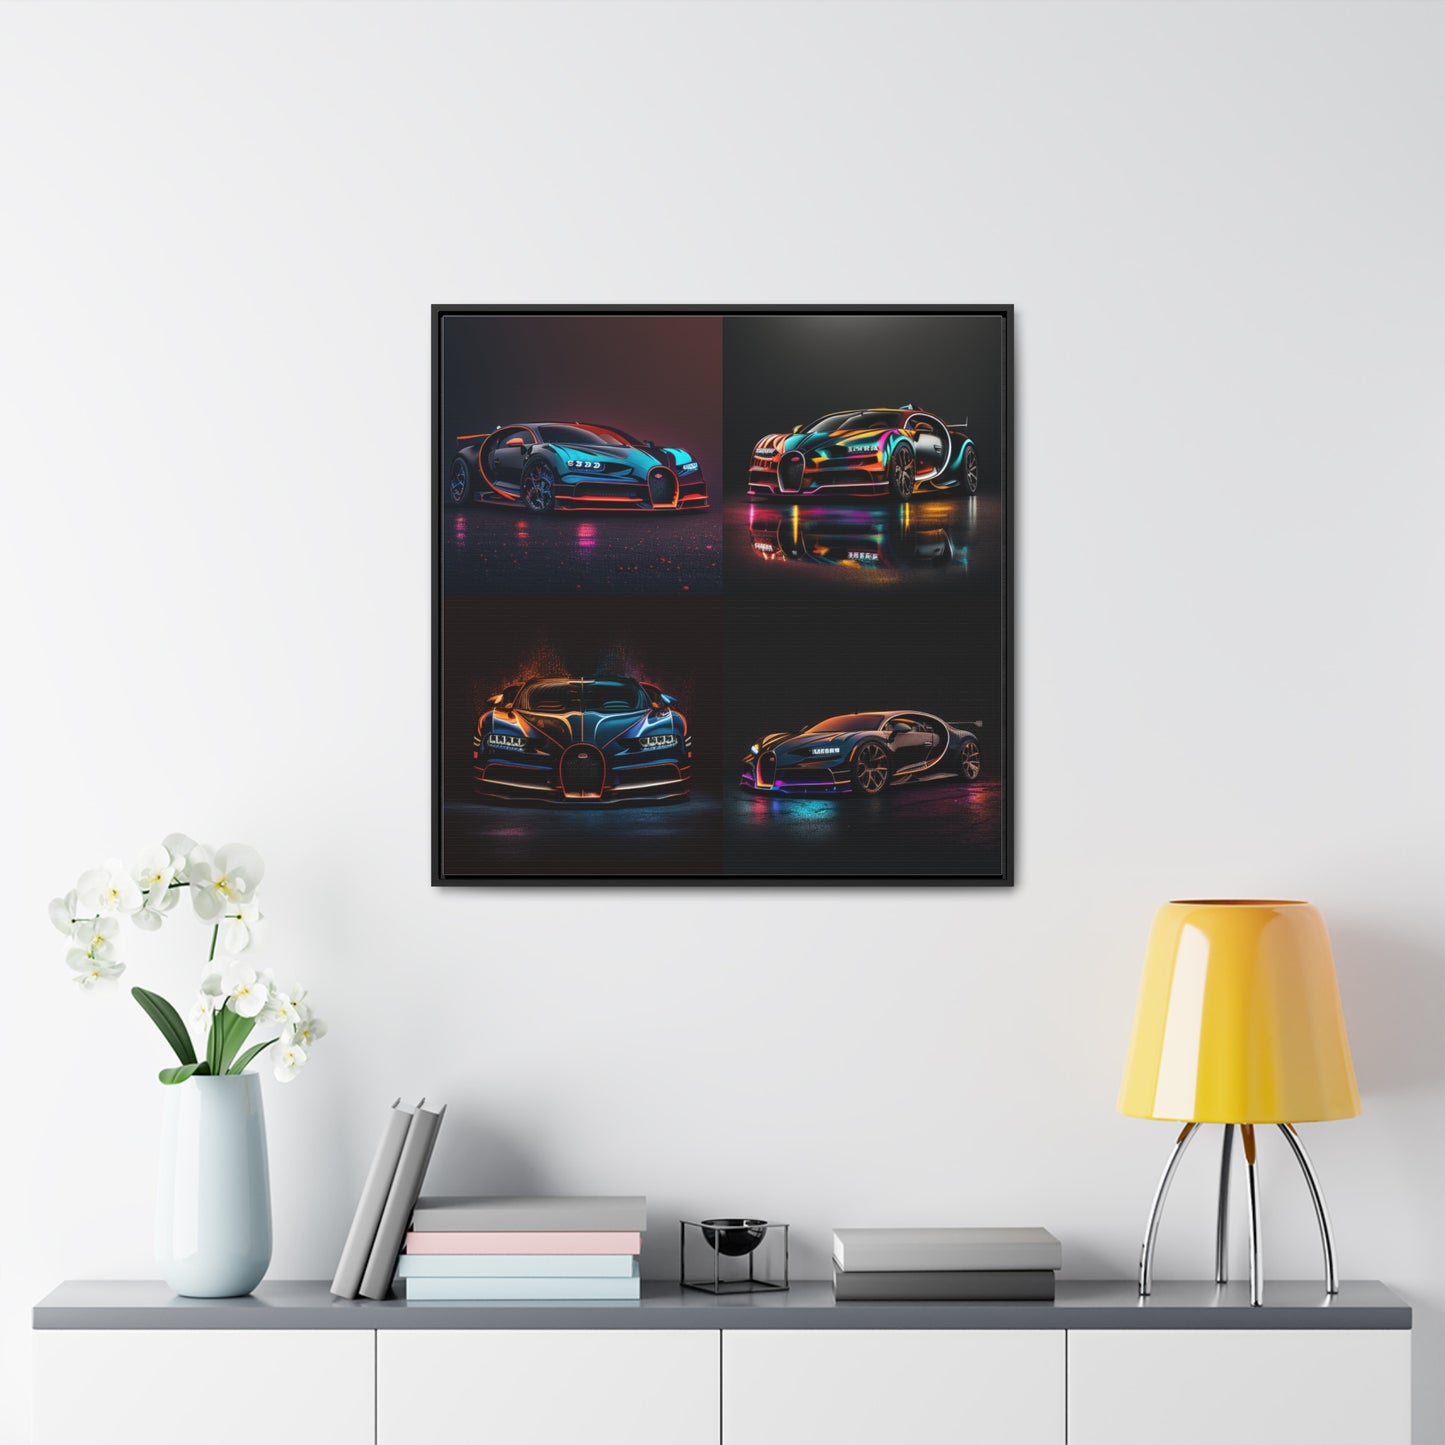 Gallery Canvas Wraps, Square Frame Bugatti Chiron Super 5